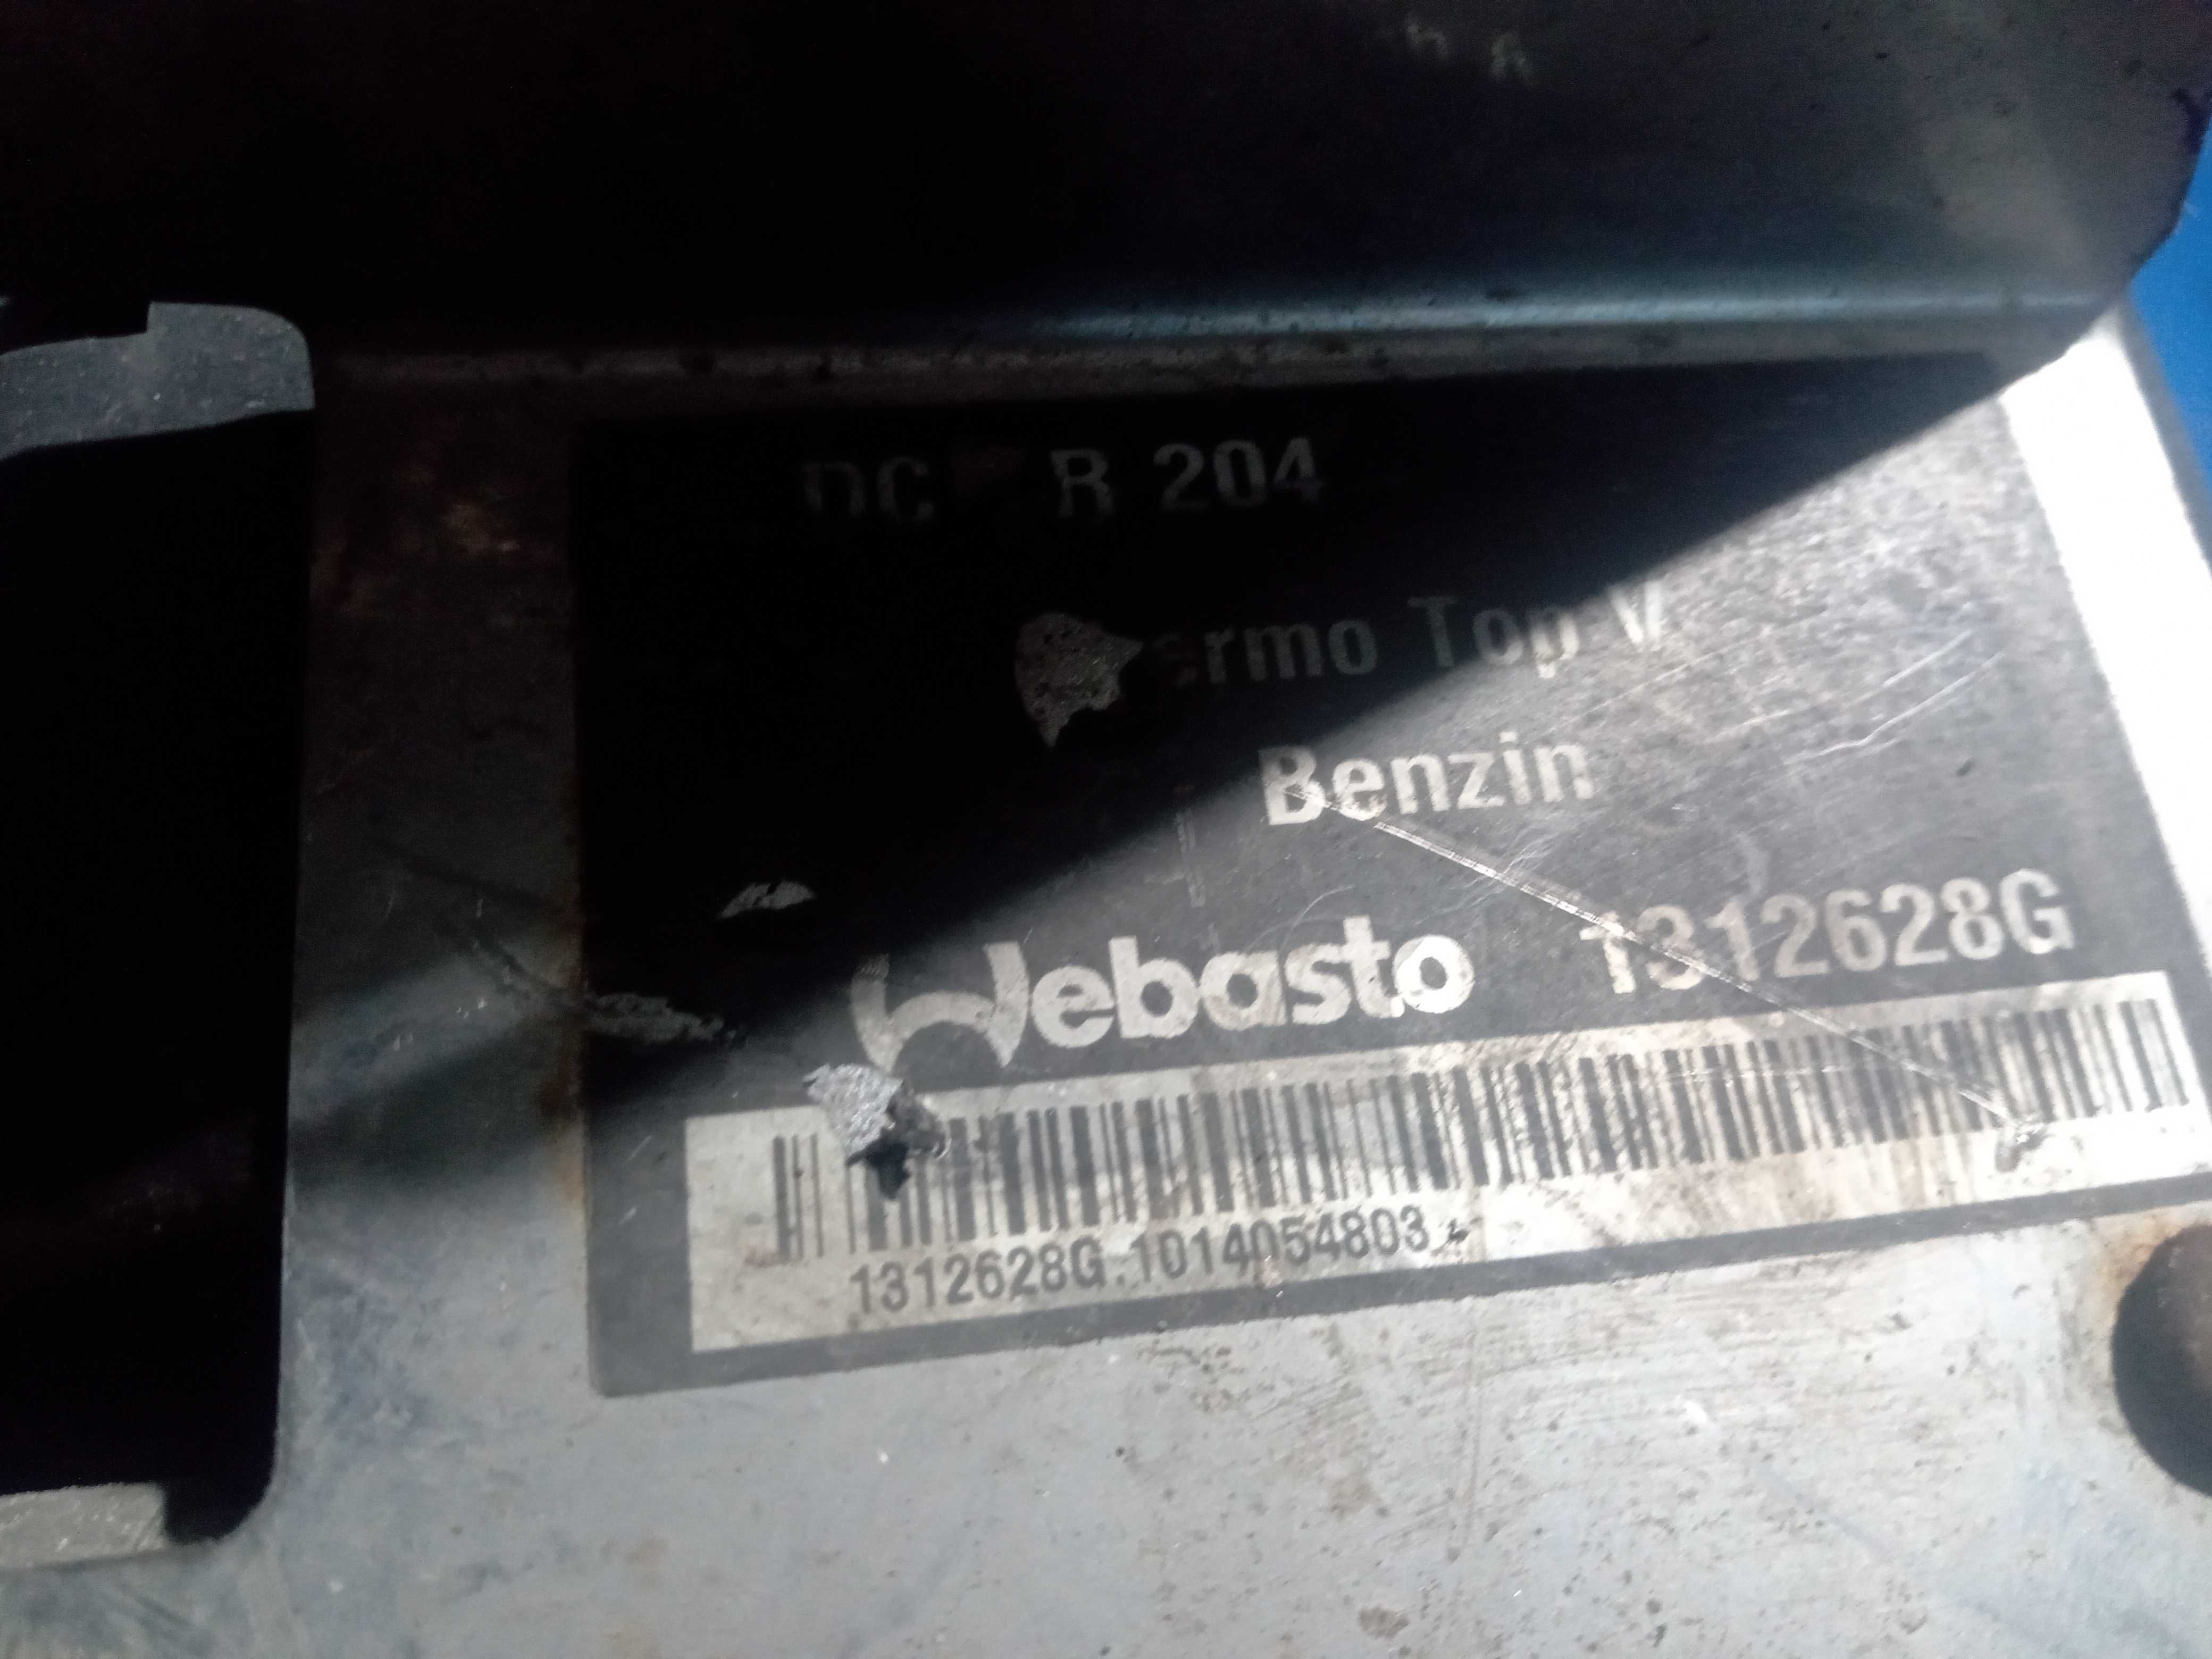 Webasto Podgrzewacz Ogrzewanie Postojowe Mercedes W204 2.2 cdi itp.